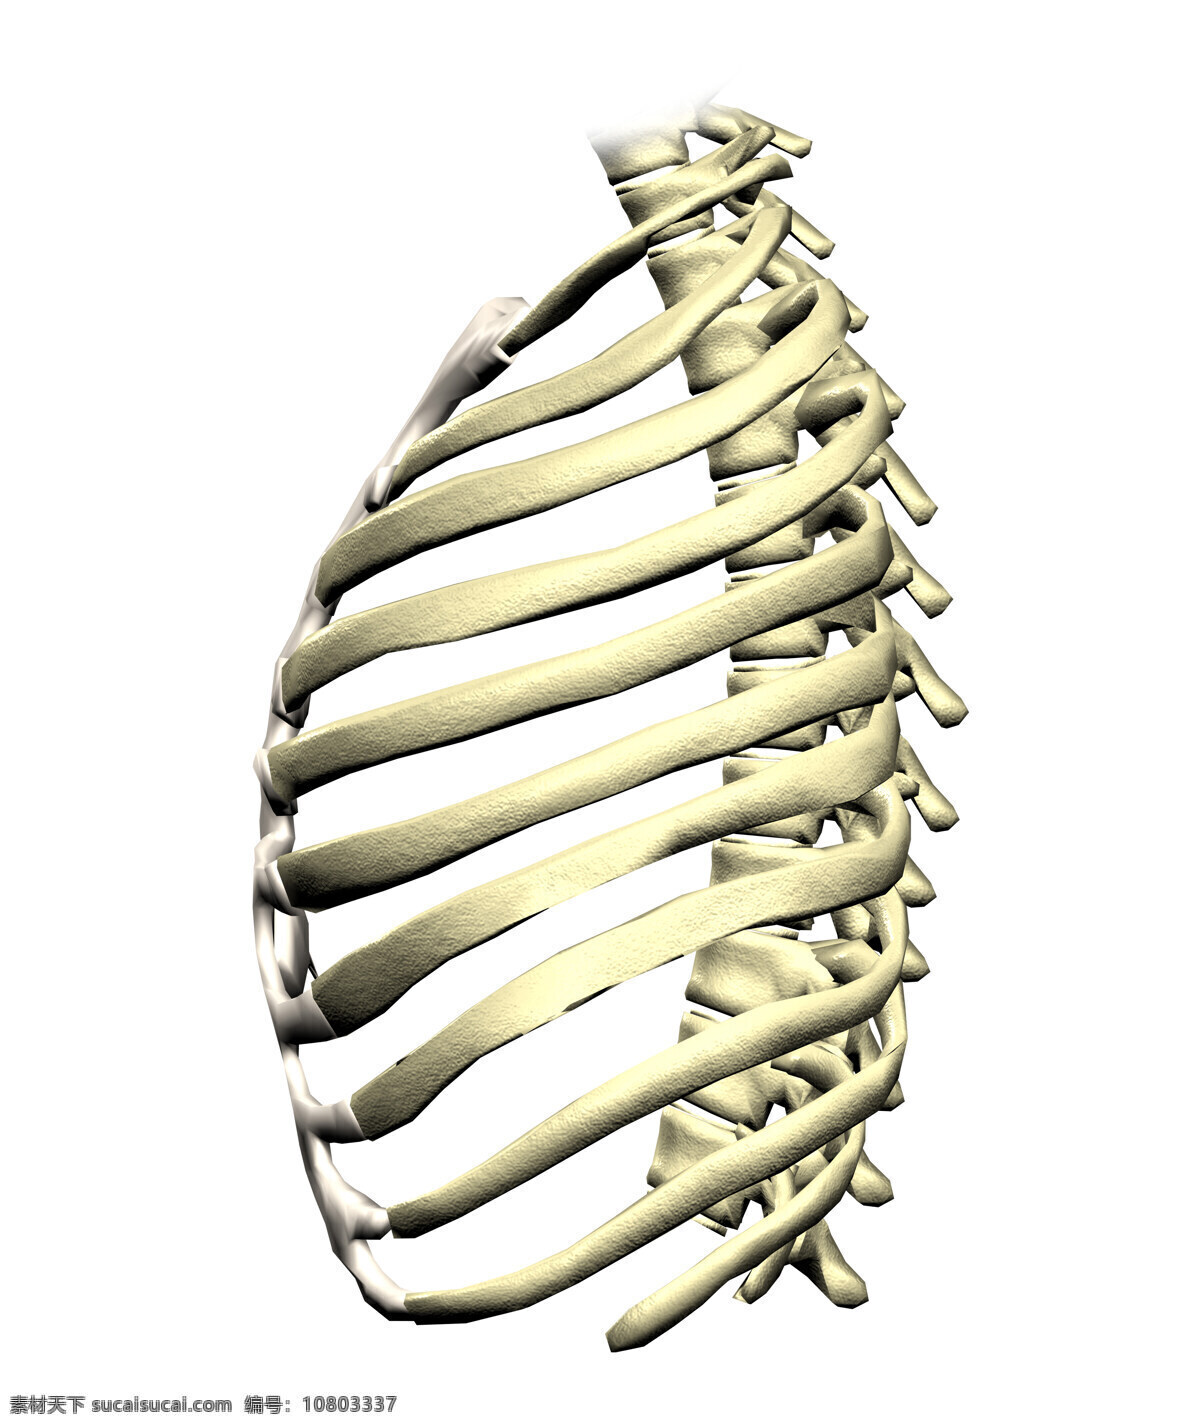 肋骨 胸骨 胸腔 骨骼 人体骨骼 3d器官 人体研究 医学器官 人体解剖 医学器官图鉴 医疗护理 现代科技